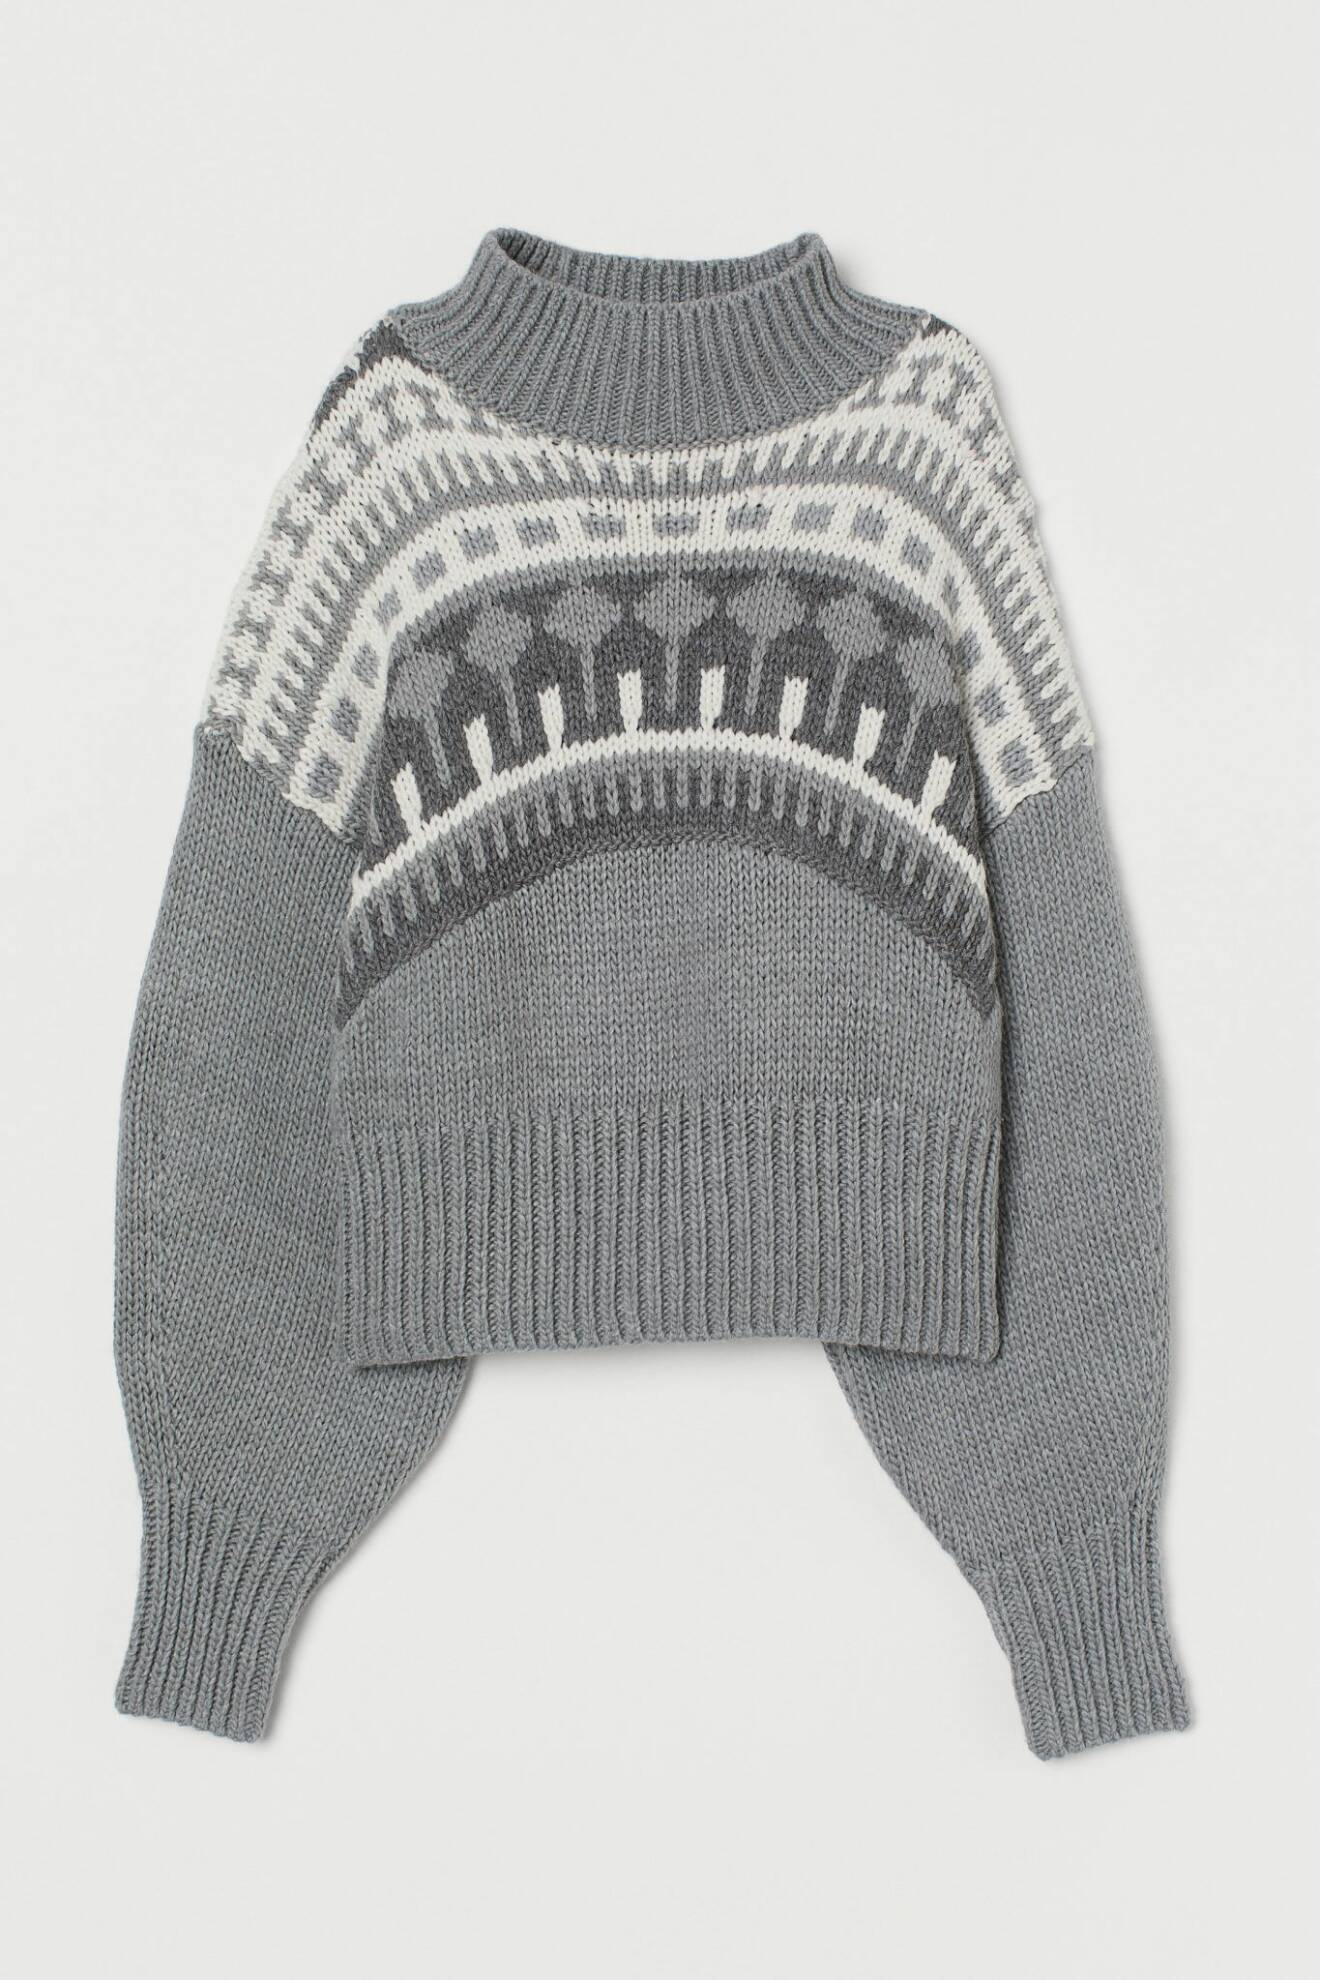 Stickad tröja från H&M med luftiga ärmar och zig zag mönster med olika nyanser av grått.